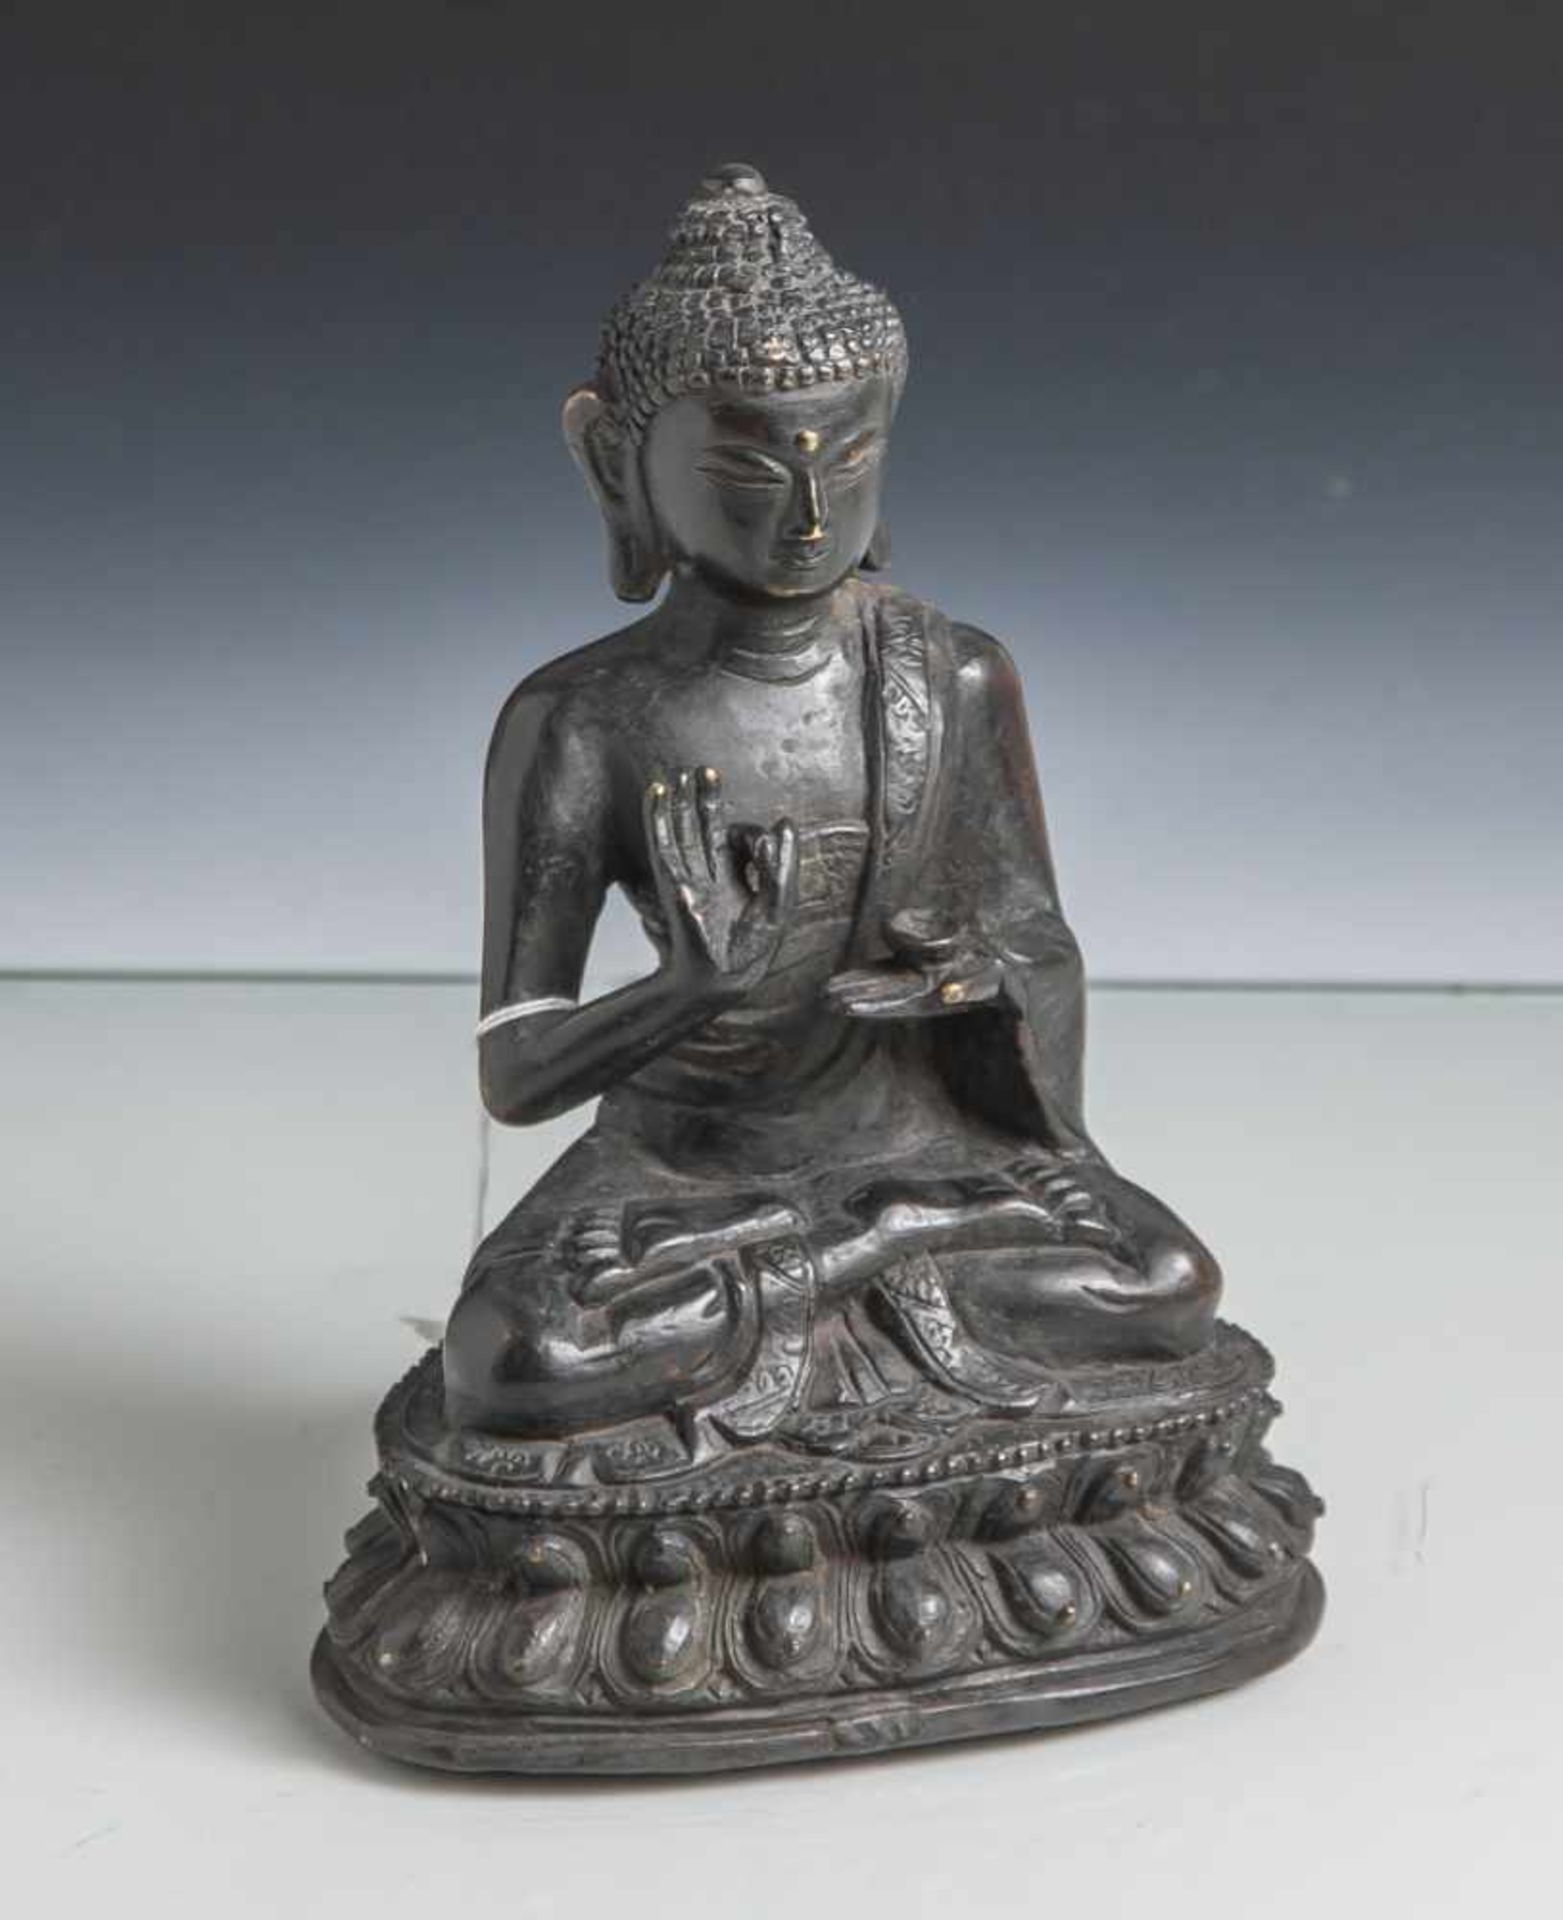 Bronzebuddha, wohl Indien 19. Jahrhundert, im Lotossitz, die Hände im Vitarka mudra. Auf